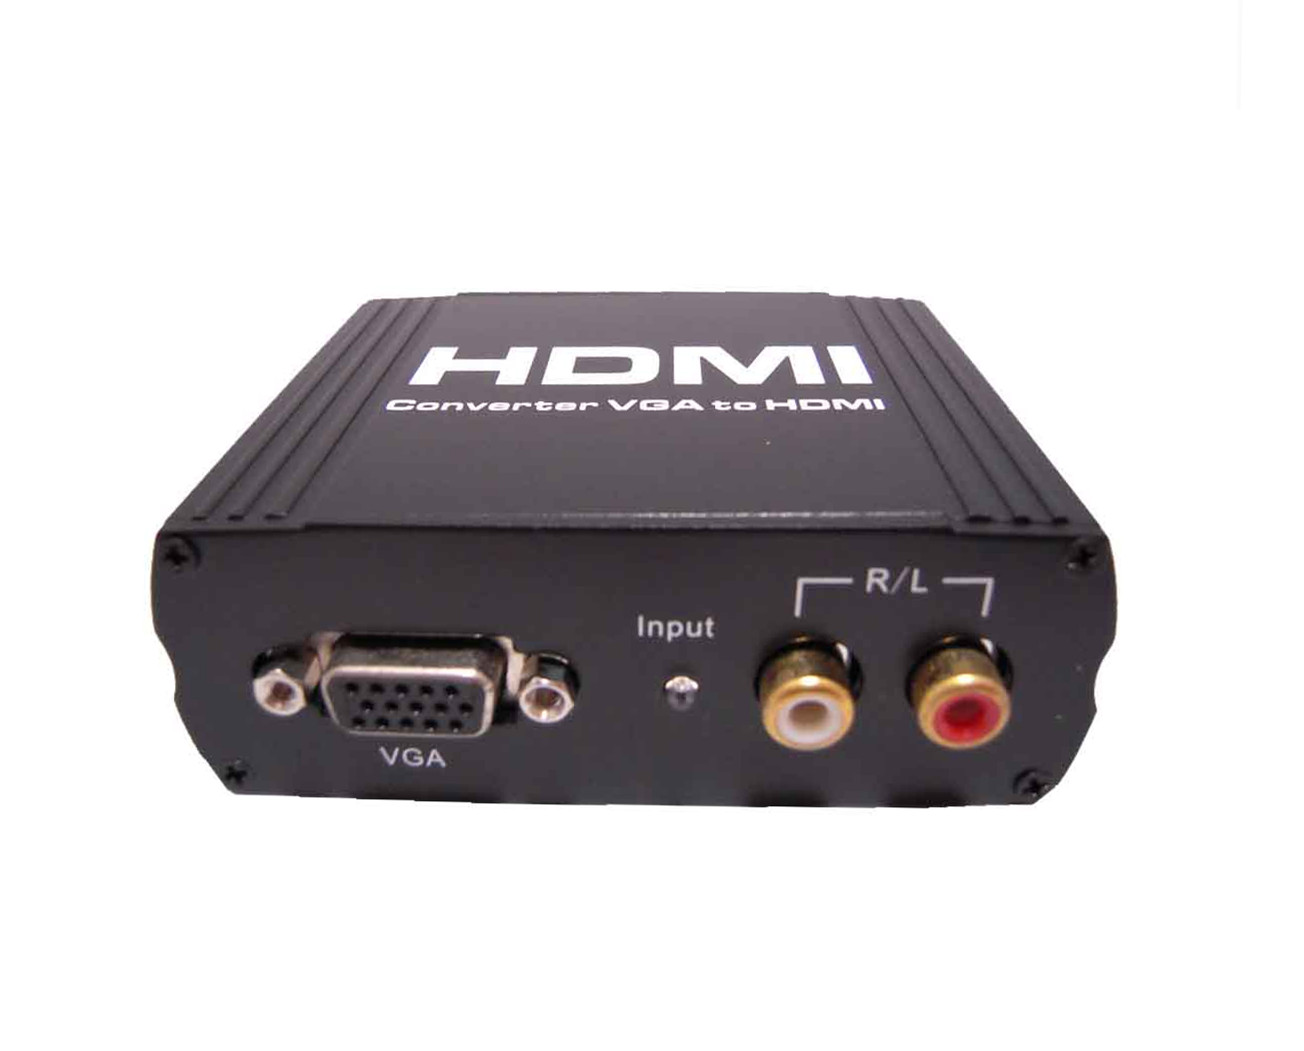 VGA+R/L to HDMI Converter